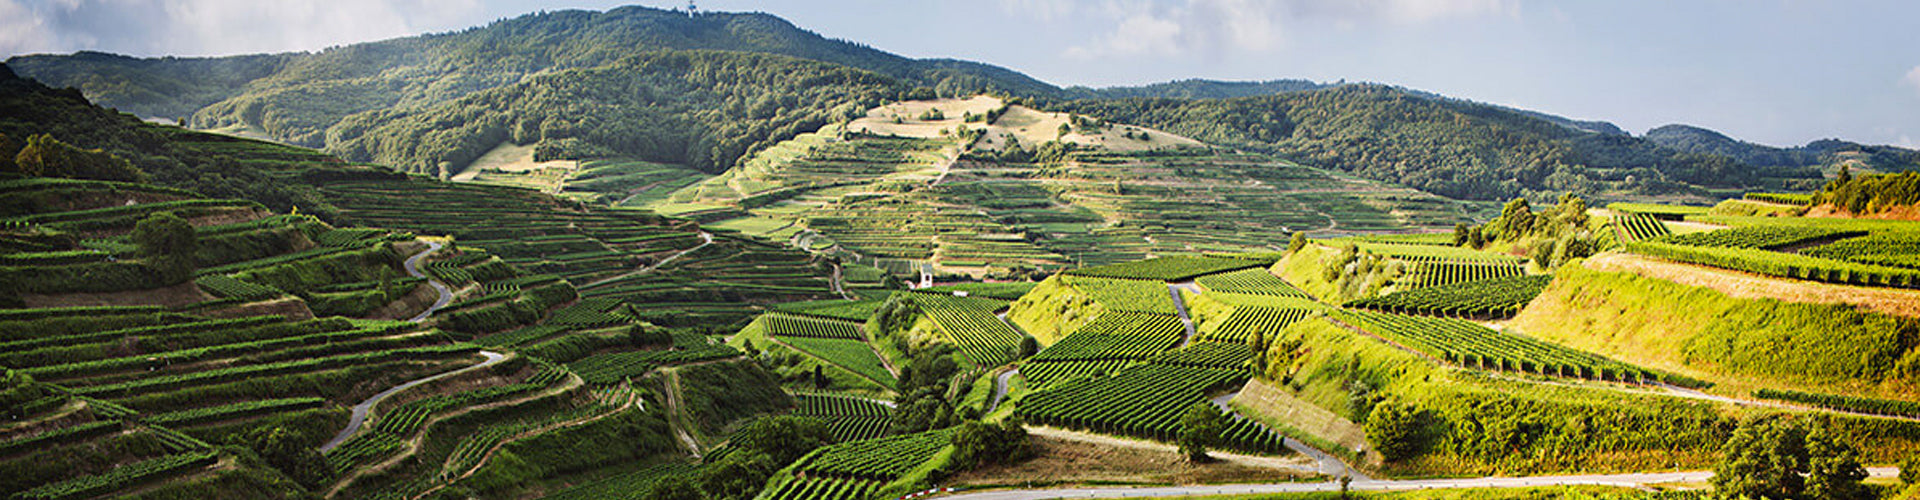 Vineyards in the Baden region of Germany